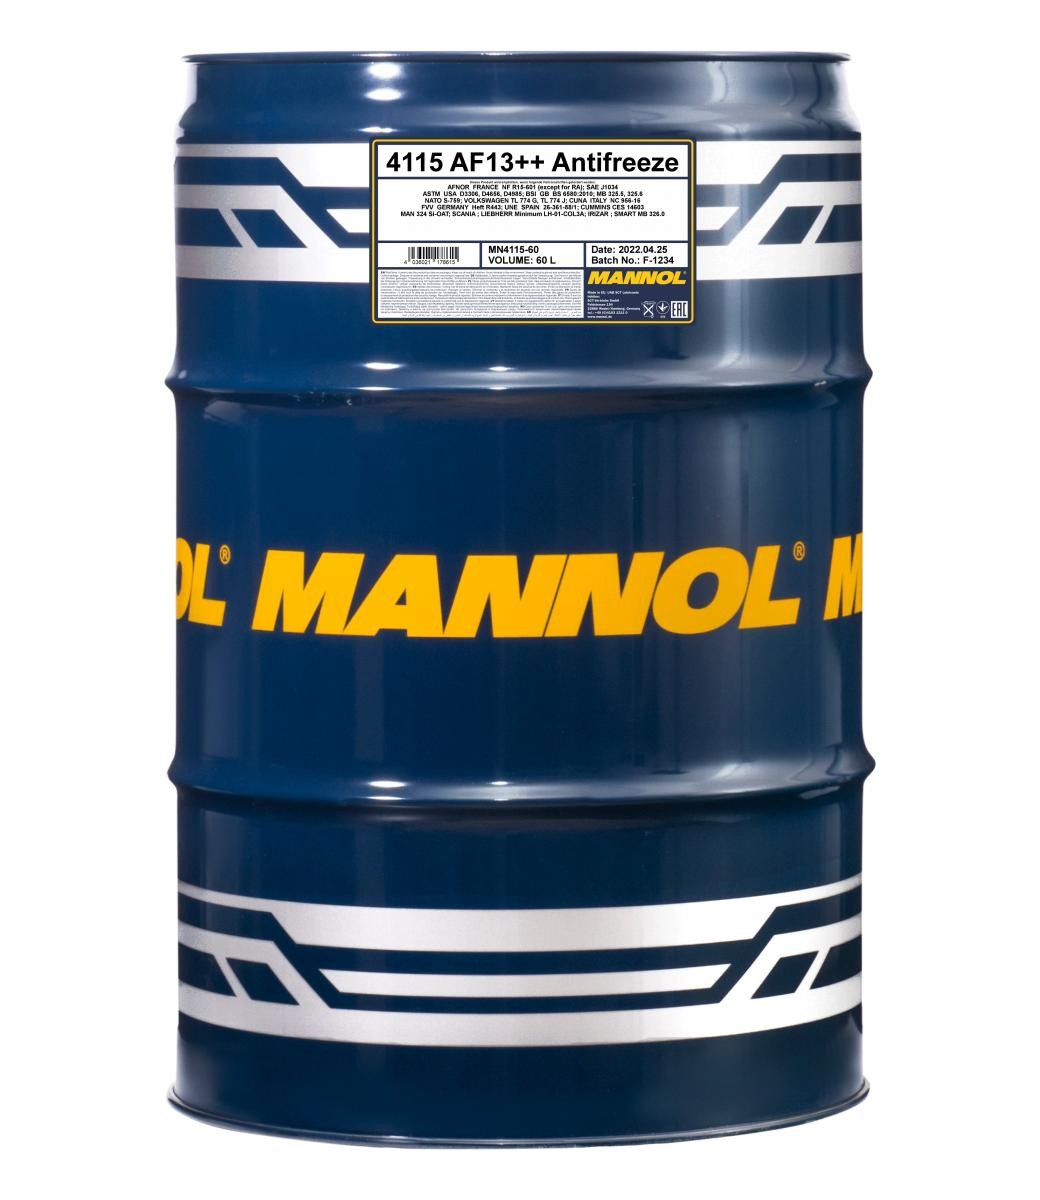 MANNOL AF13++, High-performance MN4115-60 Antigel Specificatie: G12